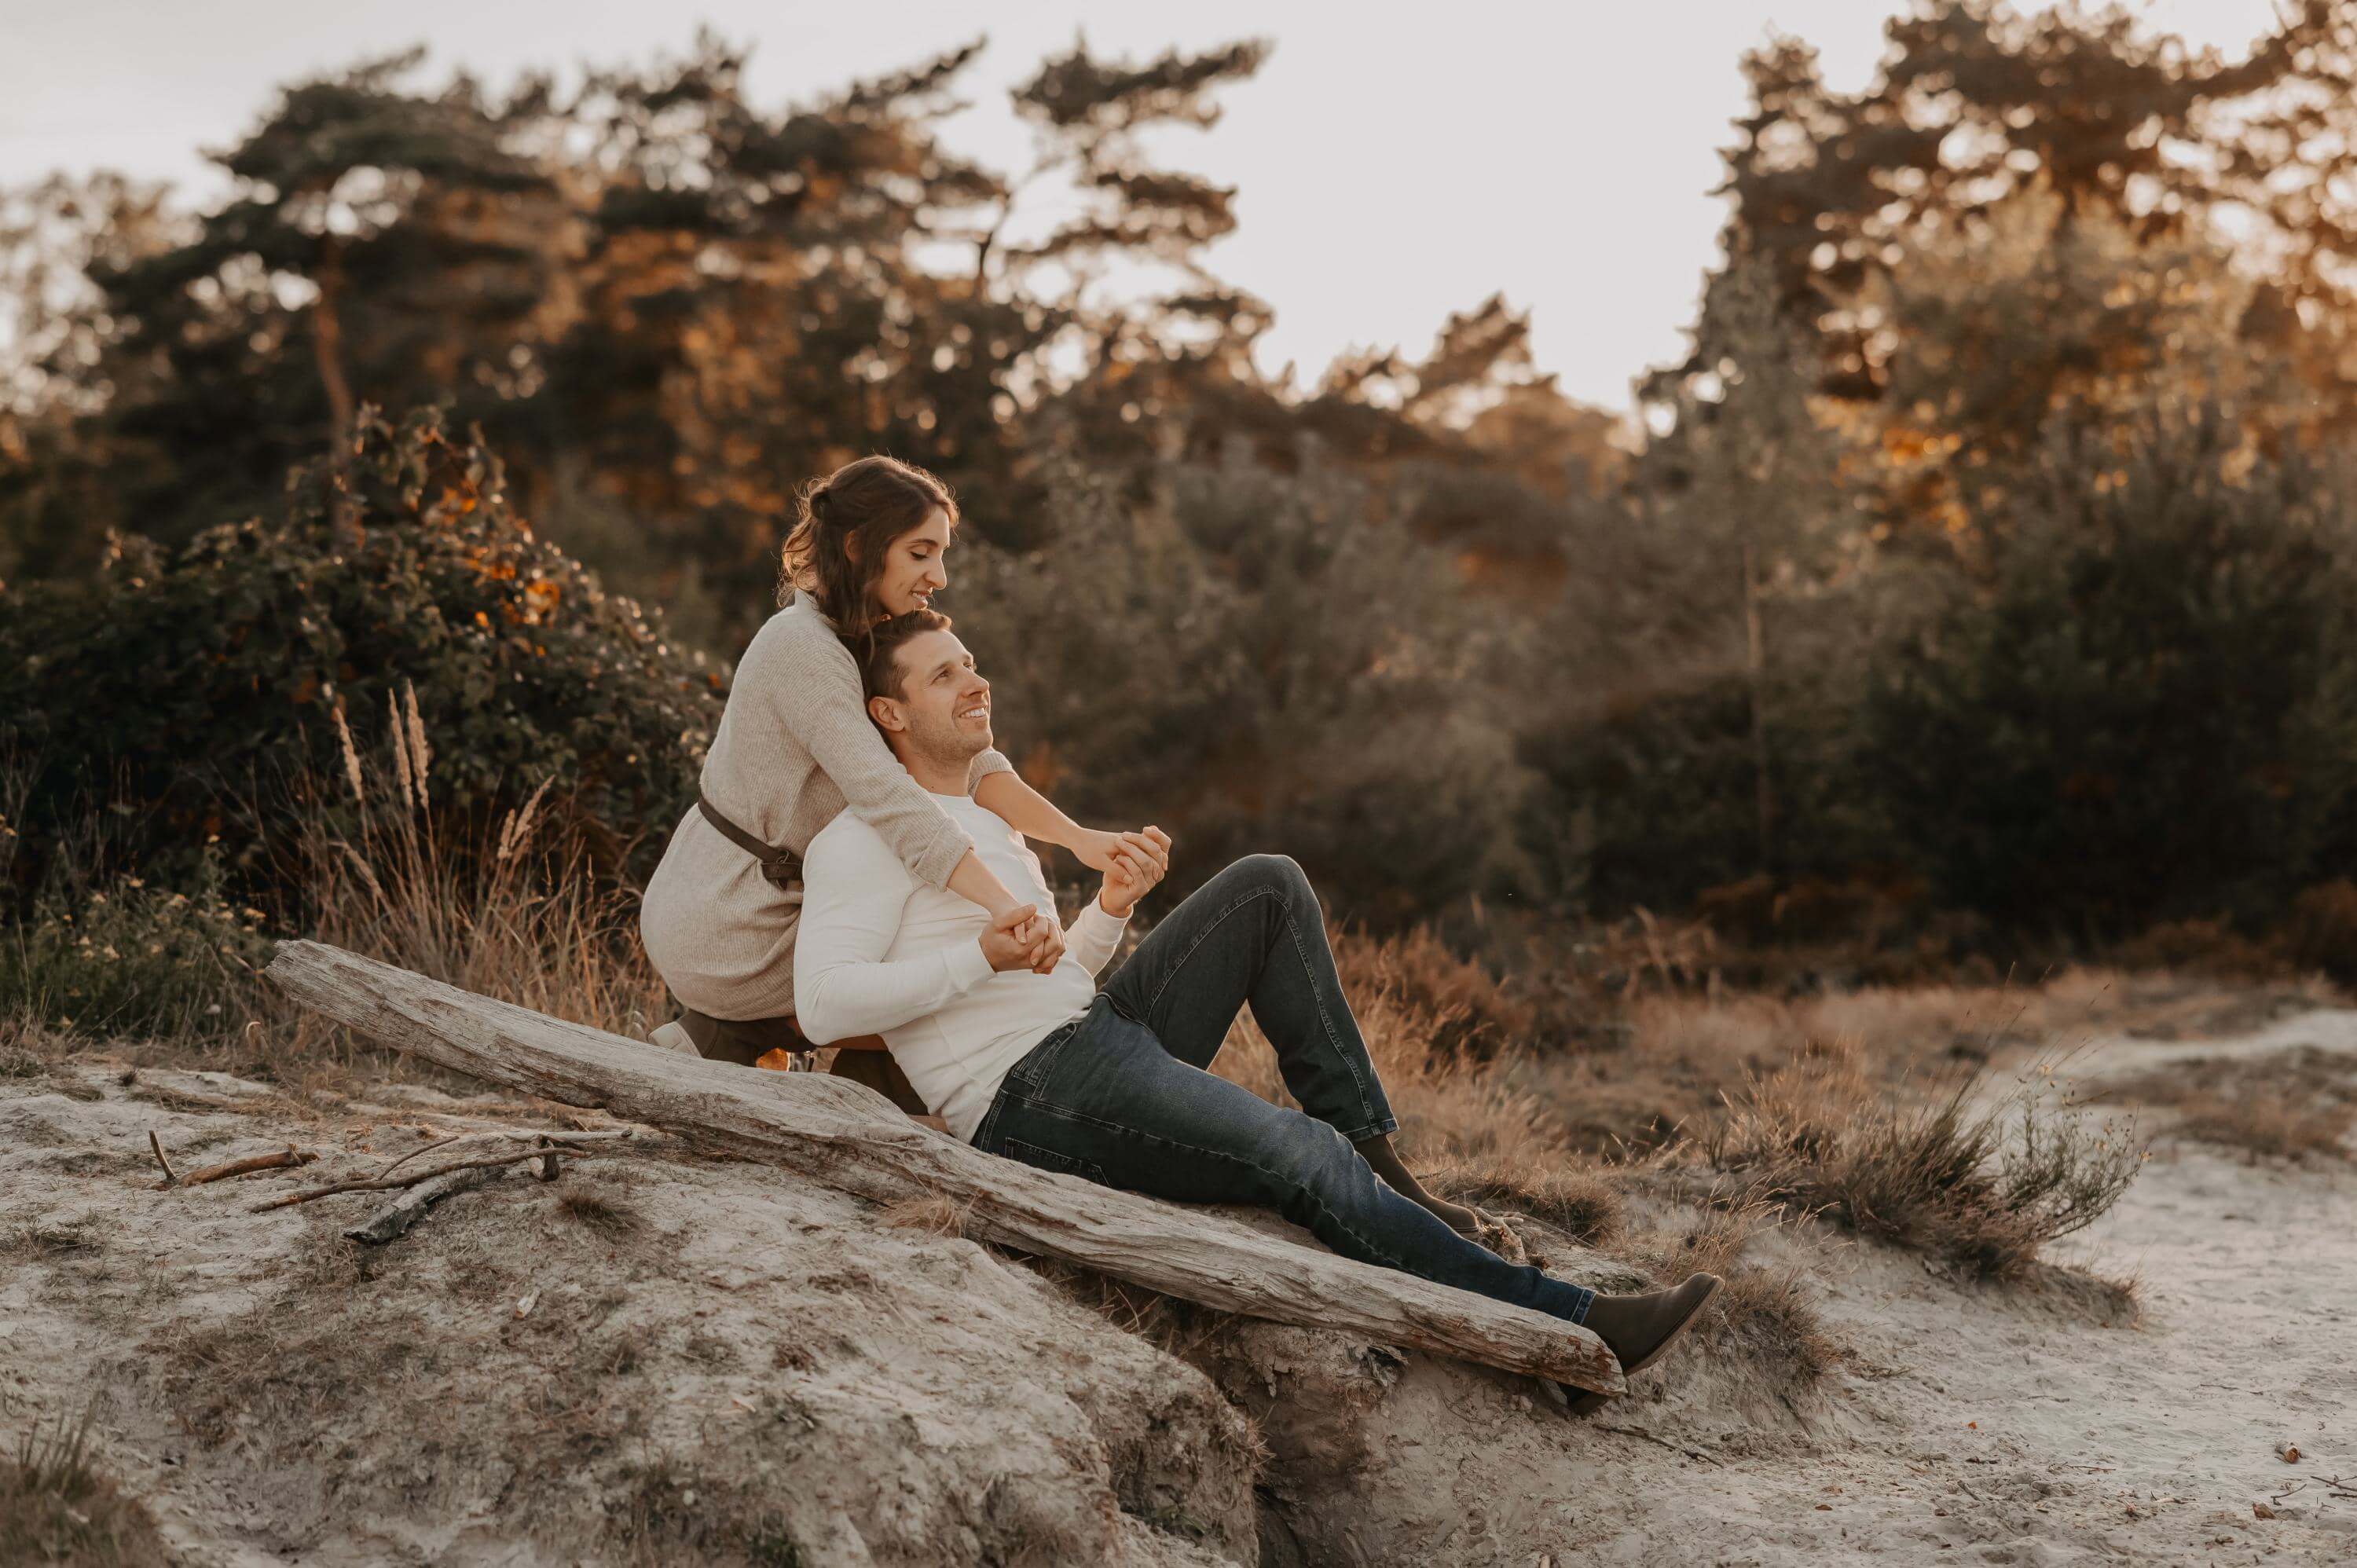 Hinter einem Baumstamm im Heidesand sitzend verbringt ein Liebespaar eine romantische Zeit Händchen haltend am See.